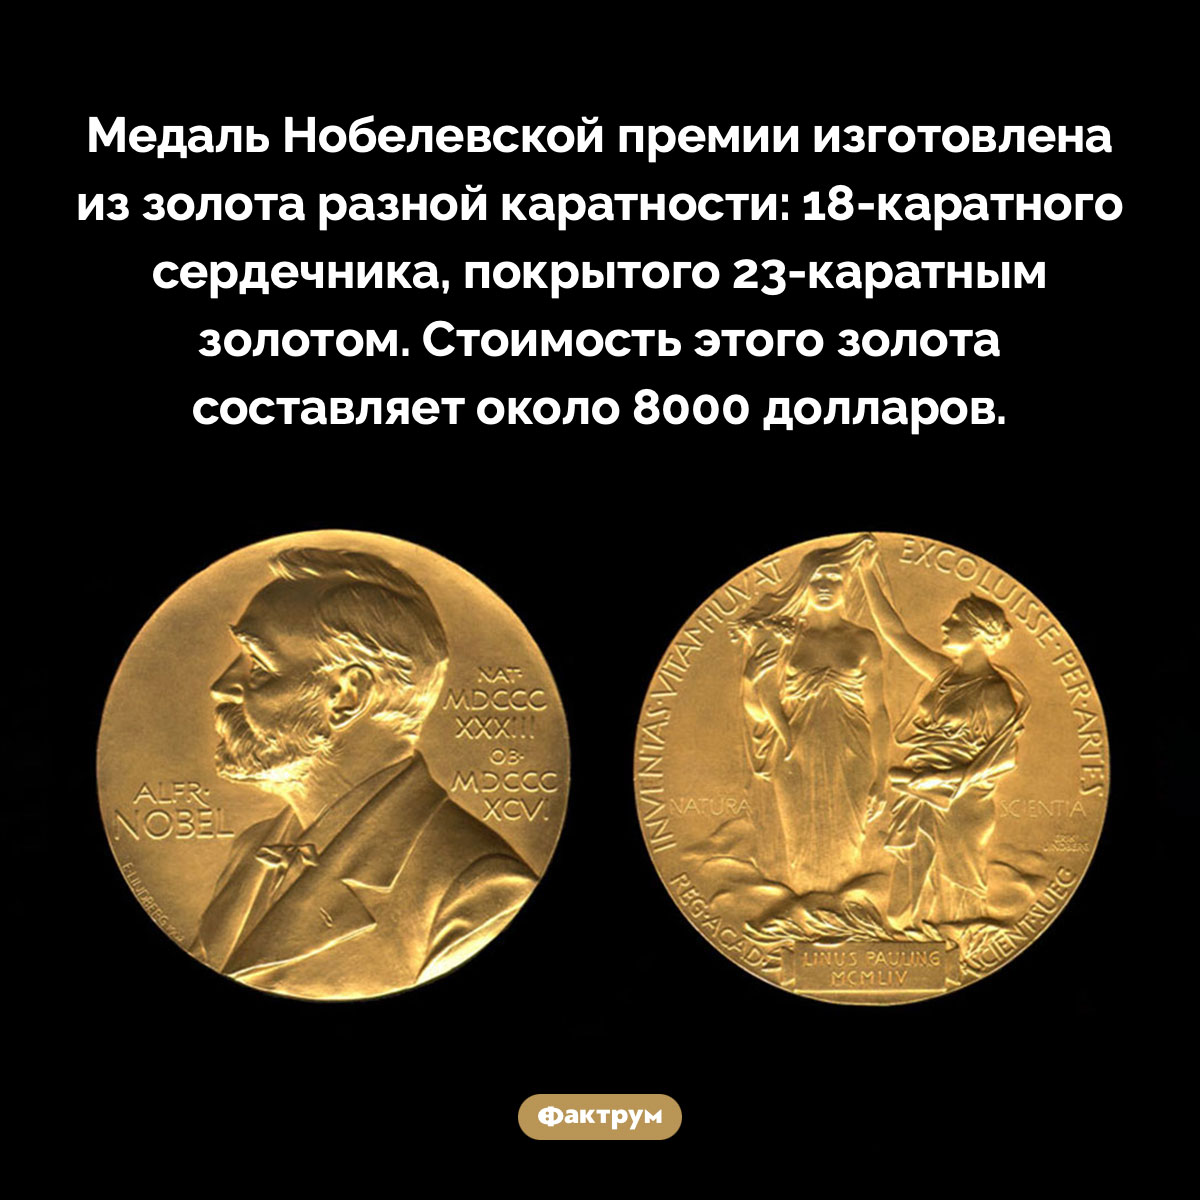 Медали Нобелевской премии делают из золота. Медаль Нобелевской премии изготовлена из золота разной каратности: 18-каратного сердечника, покрытого 23-каратным золотом. Стоимость этого золота составляет около 8000 долларов.